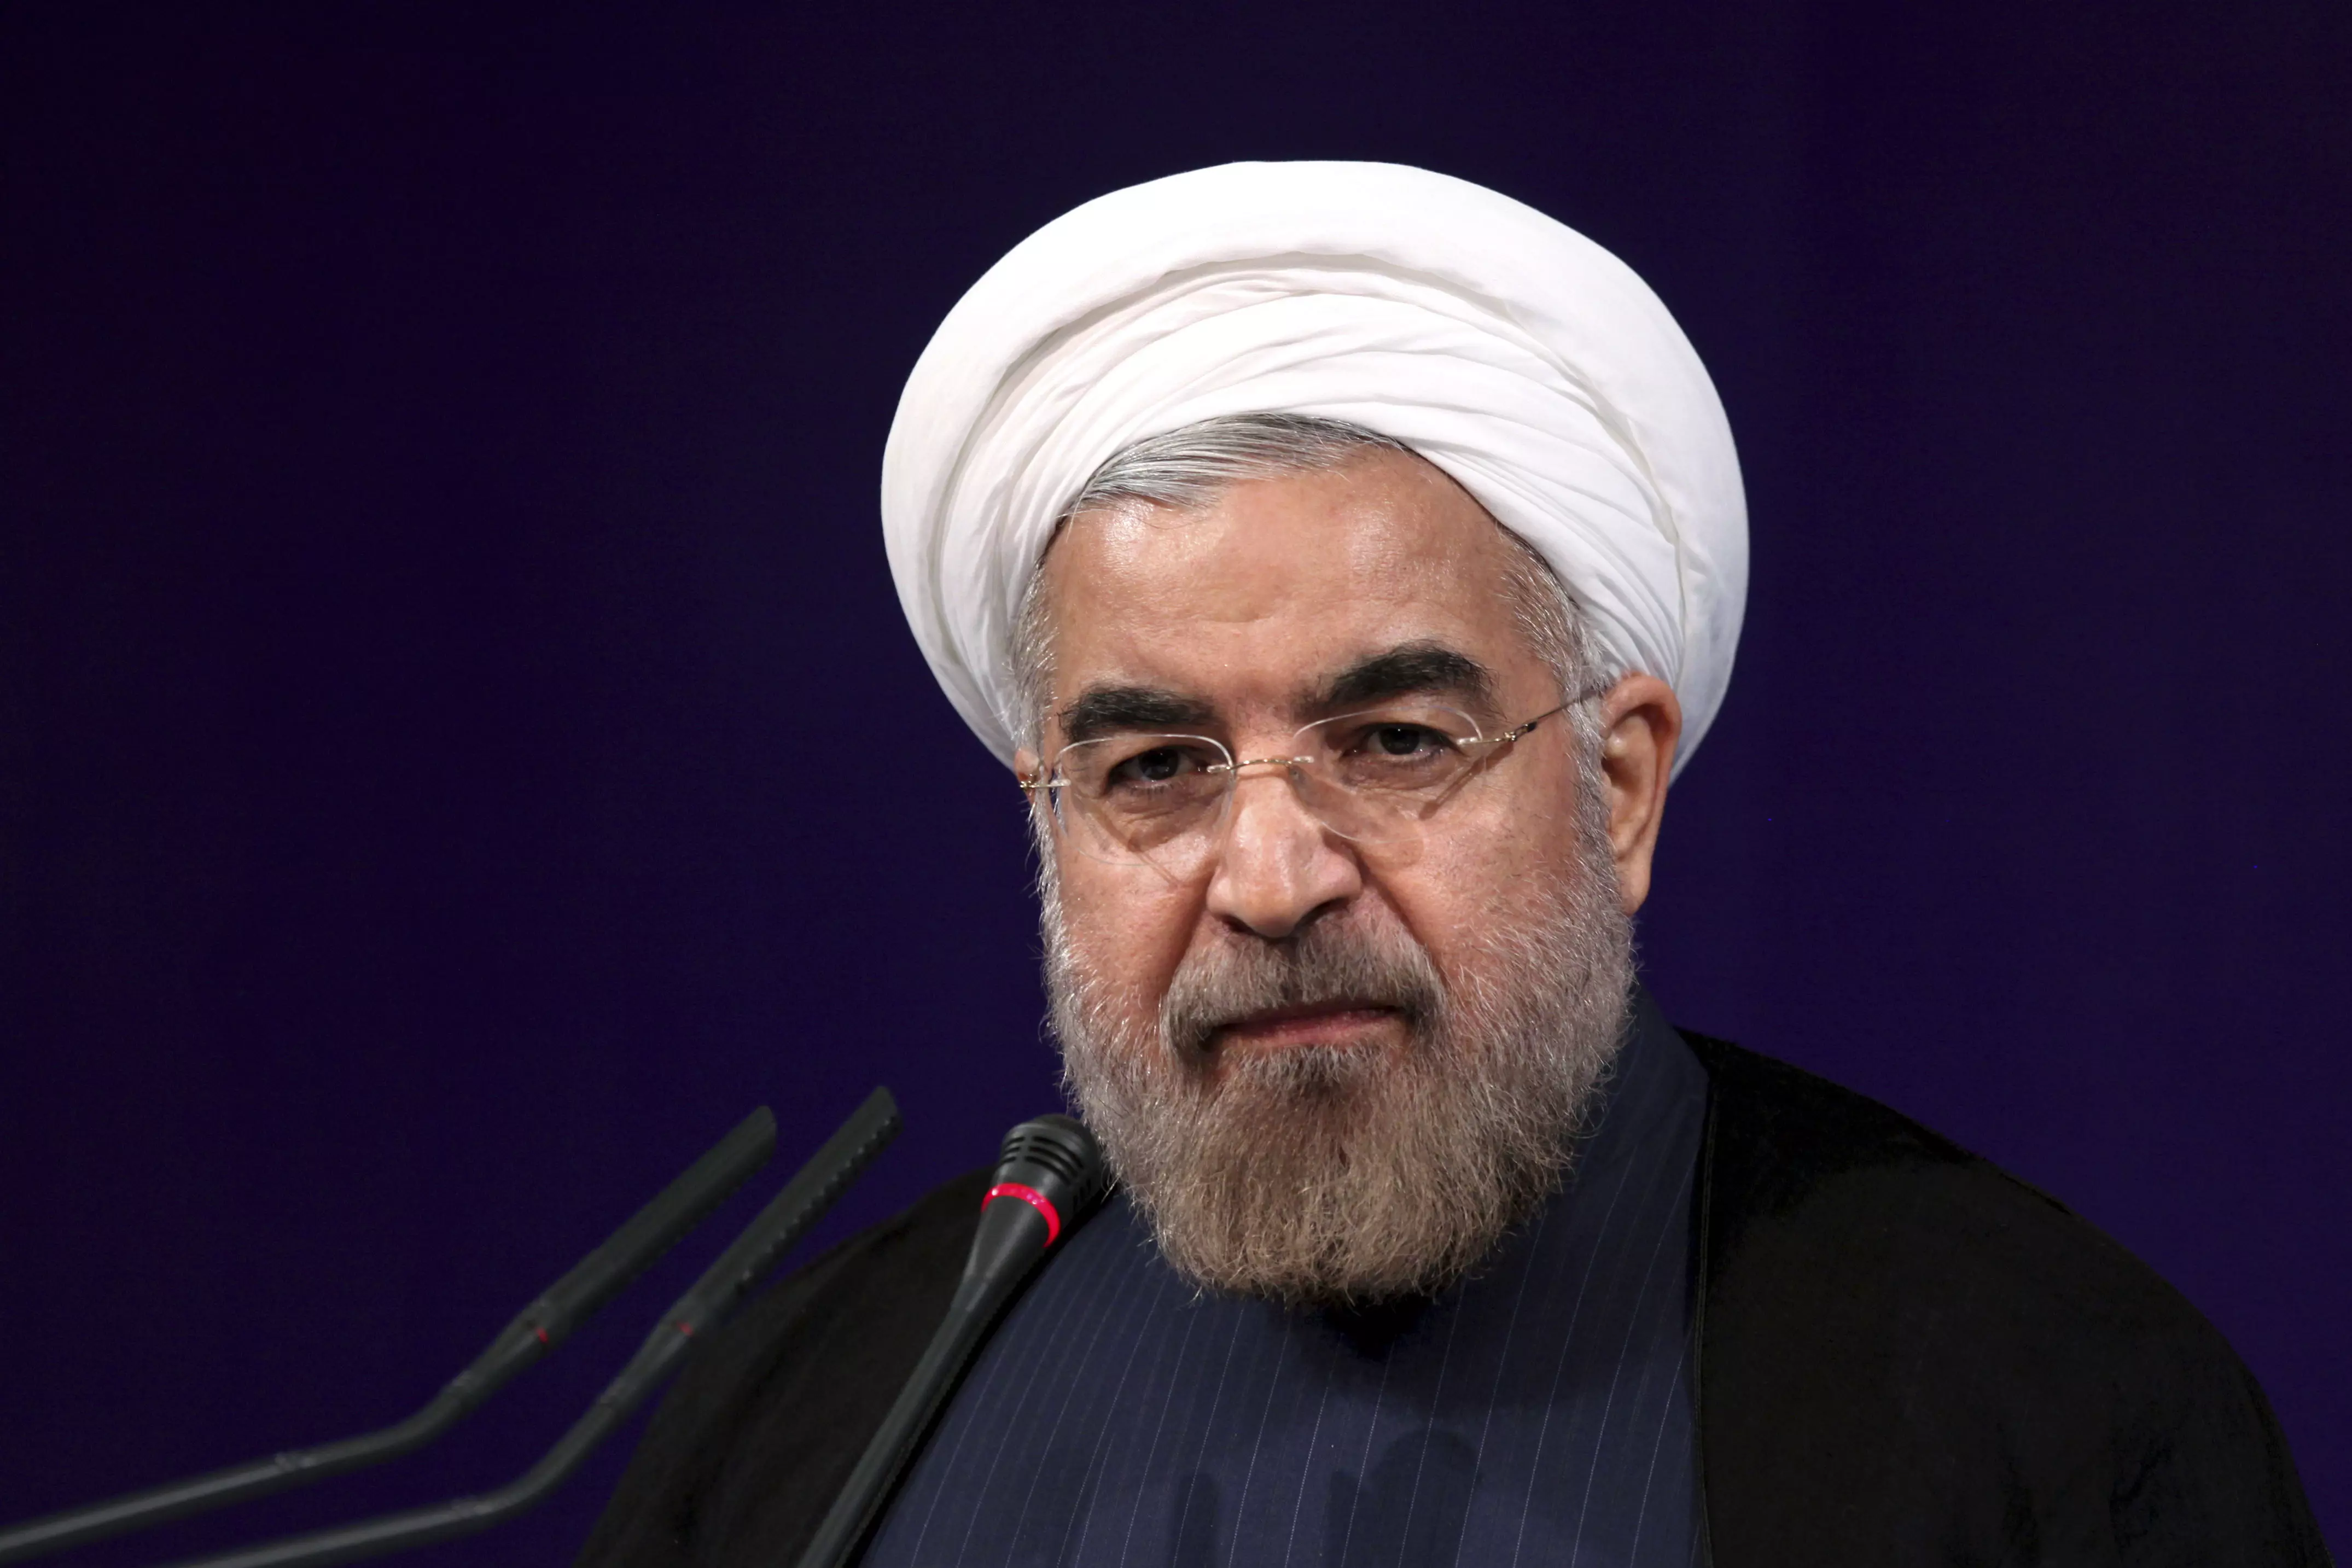 הוזהר מפני "המשך המדיניות העקשנית והמעורפלת". נשיא איראן, חסן רוחאני